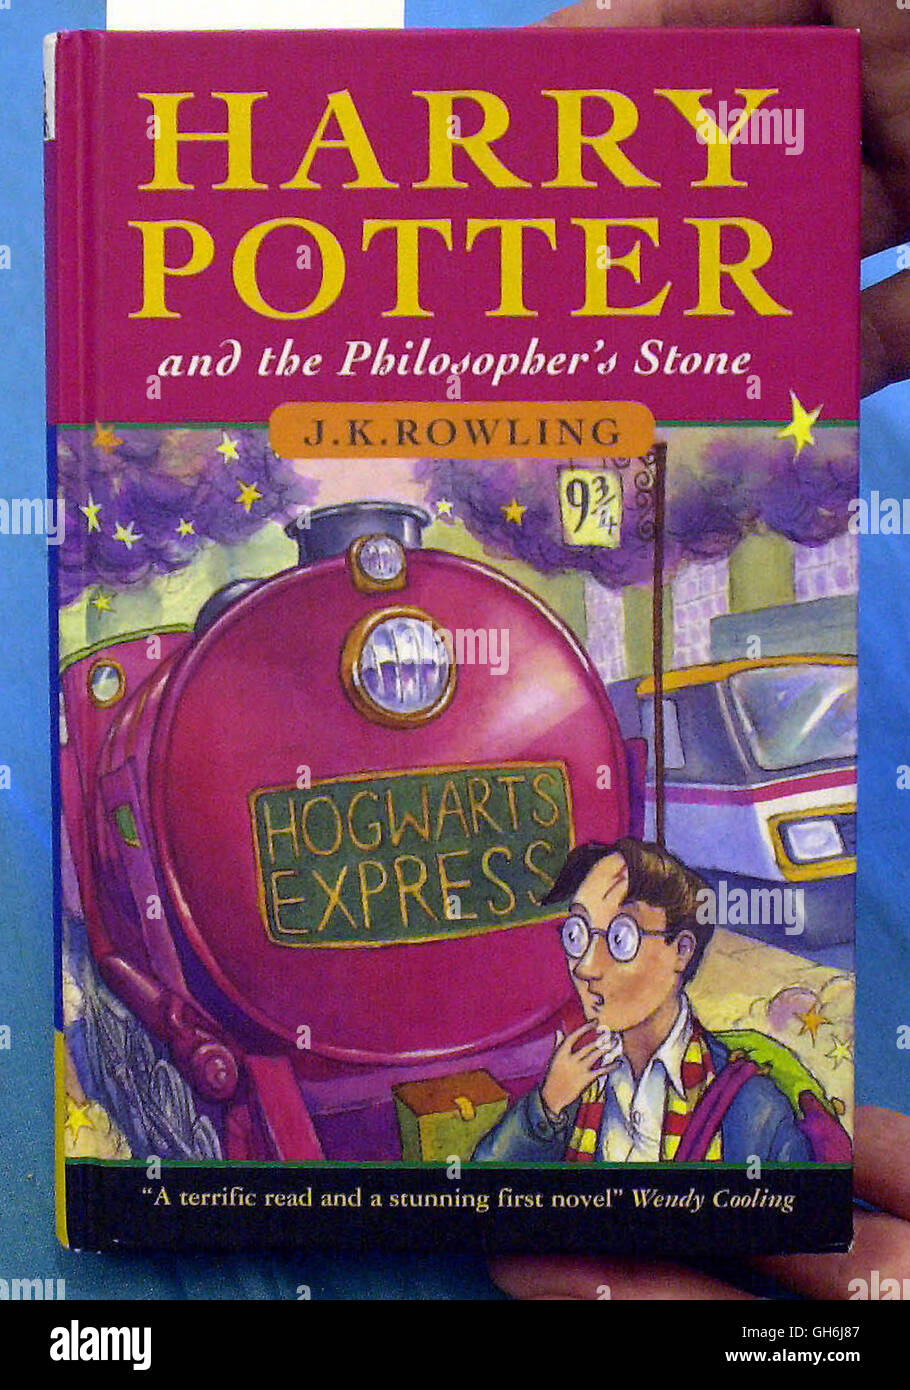 File foto datata 14/11/2000 di una prima edizione di Harry Potter e la pietra filosofale come la British Library ha annunciato una nuova mostra su Harry Potter. Foto Stock